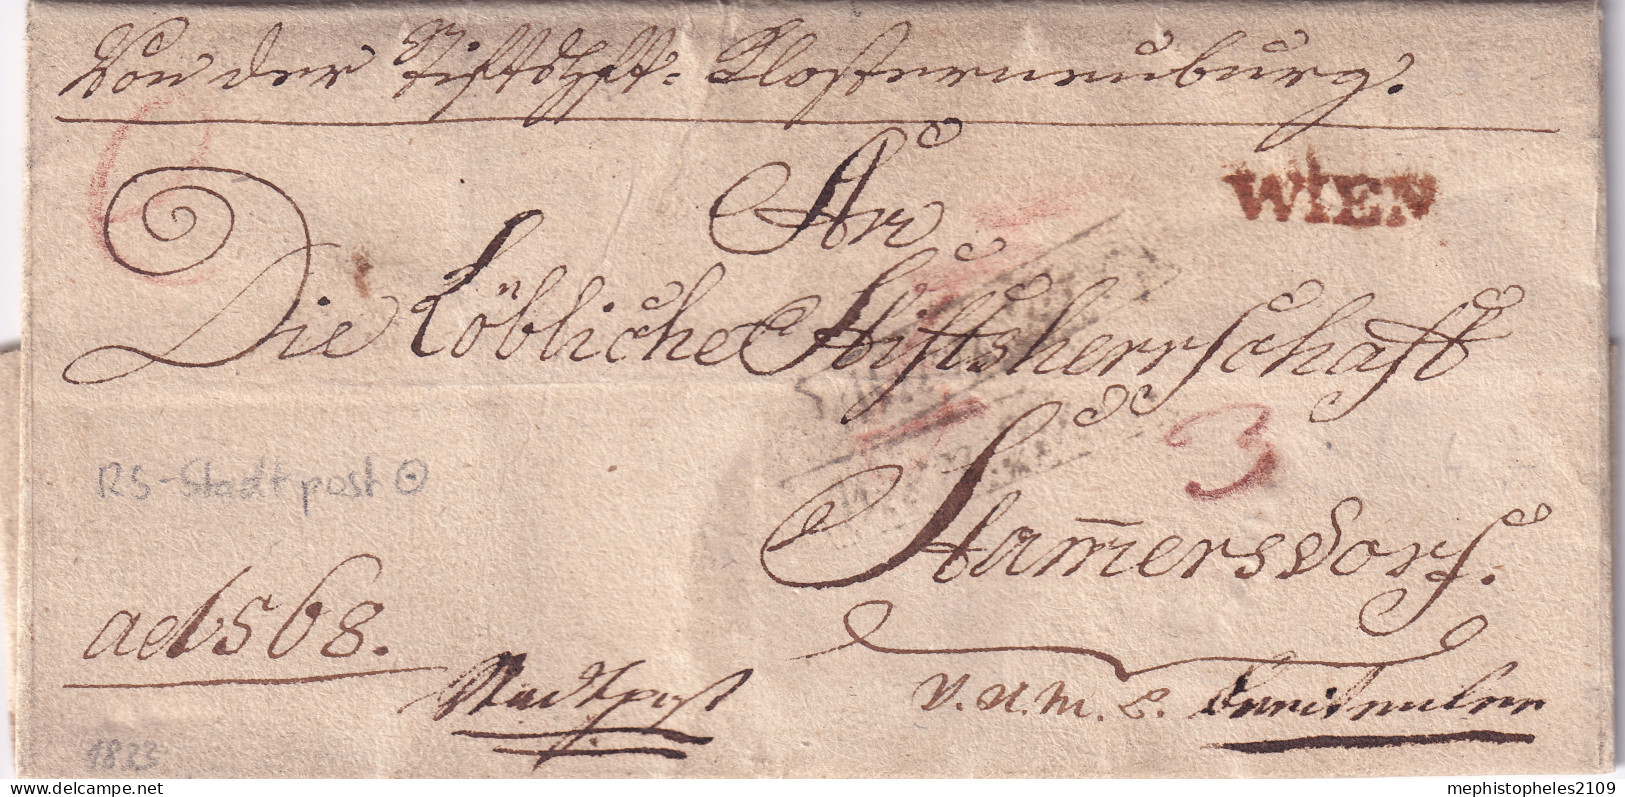 AUSTRIA 1833 - Brief An Die Löbliche Stiftsherrschaft Stammersdorf - Stadtpost -Stpl. WIEN, No.85 KK Briefsamt - ...-1850 Vorphilatelie